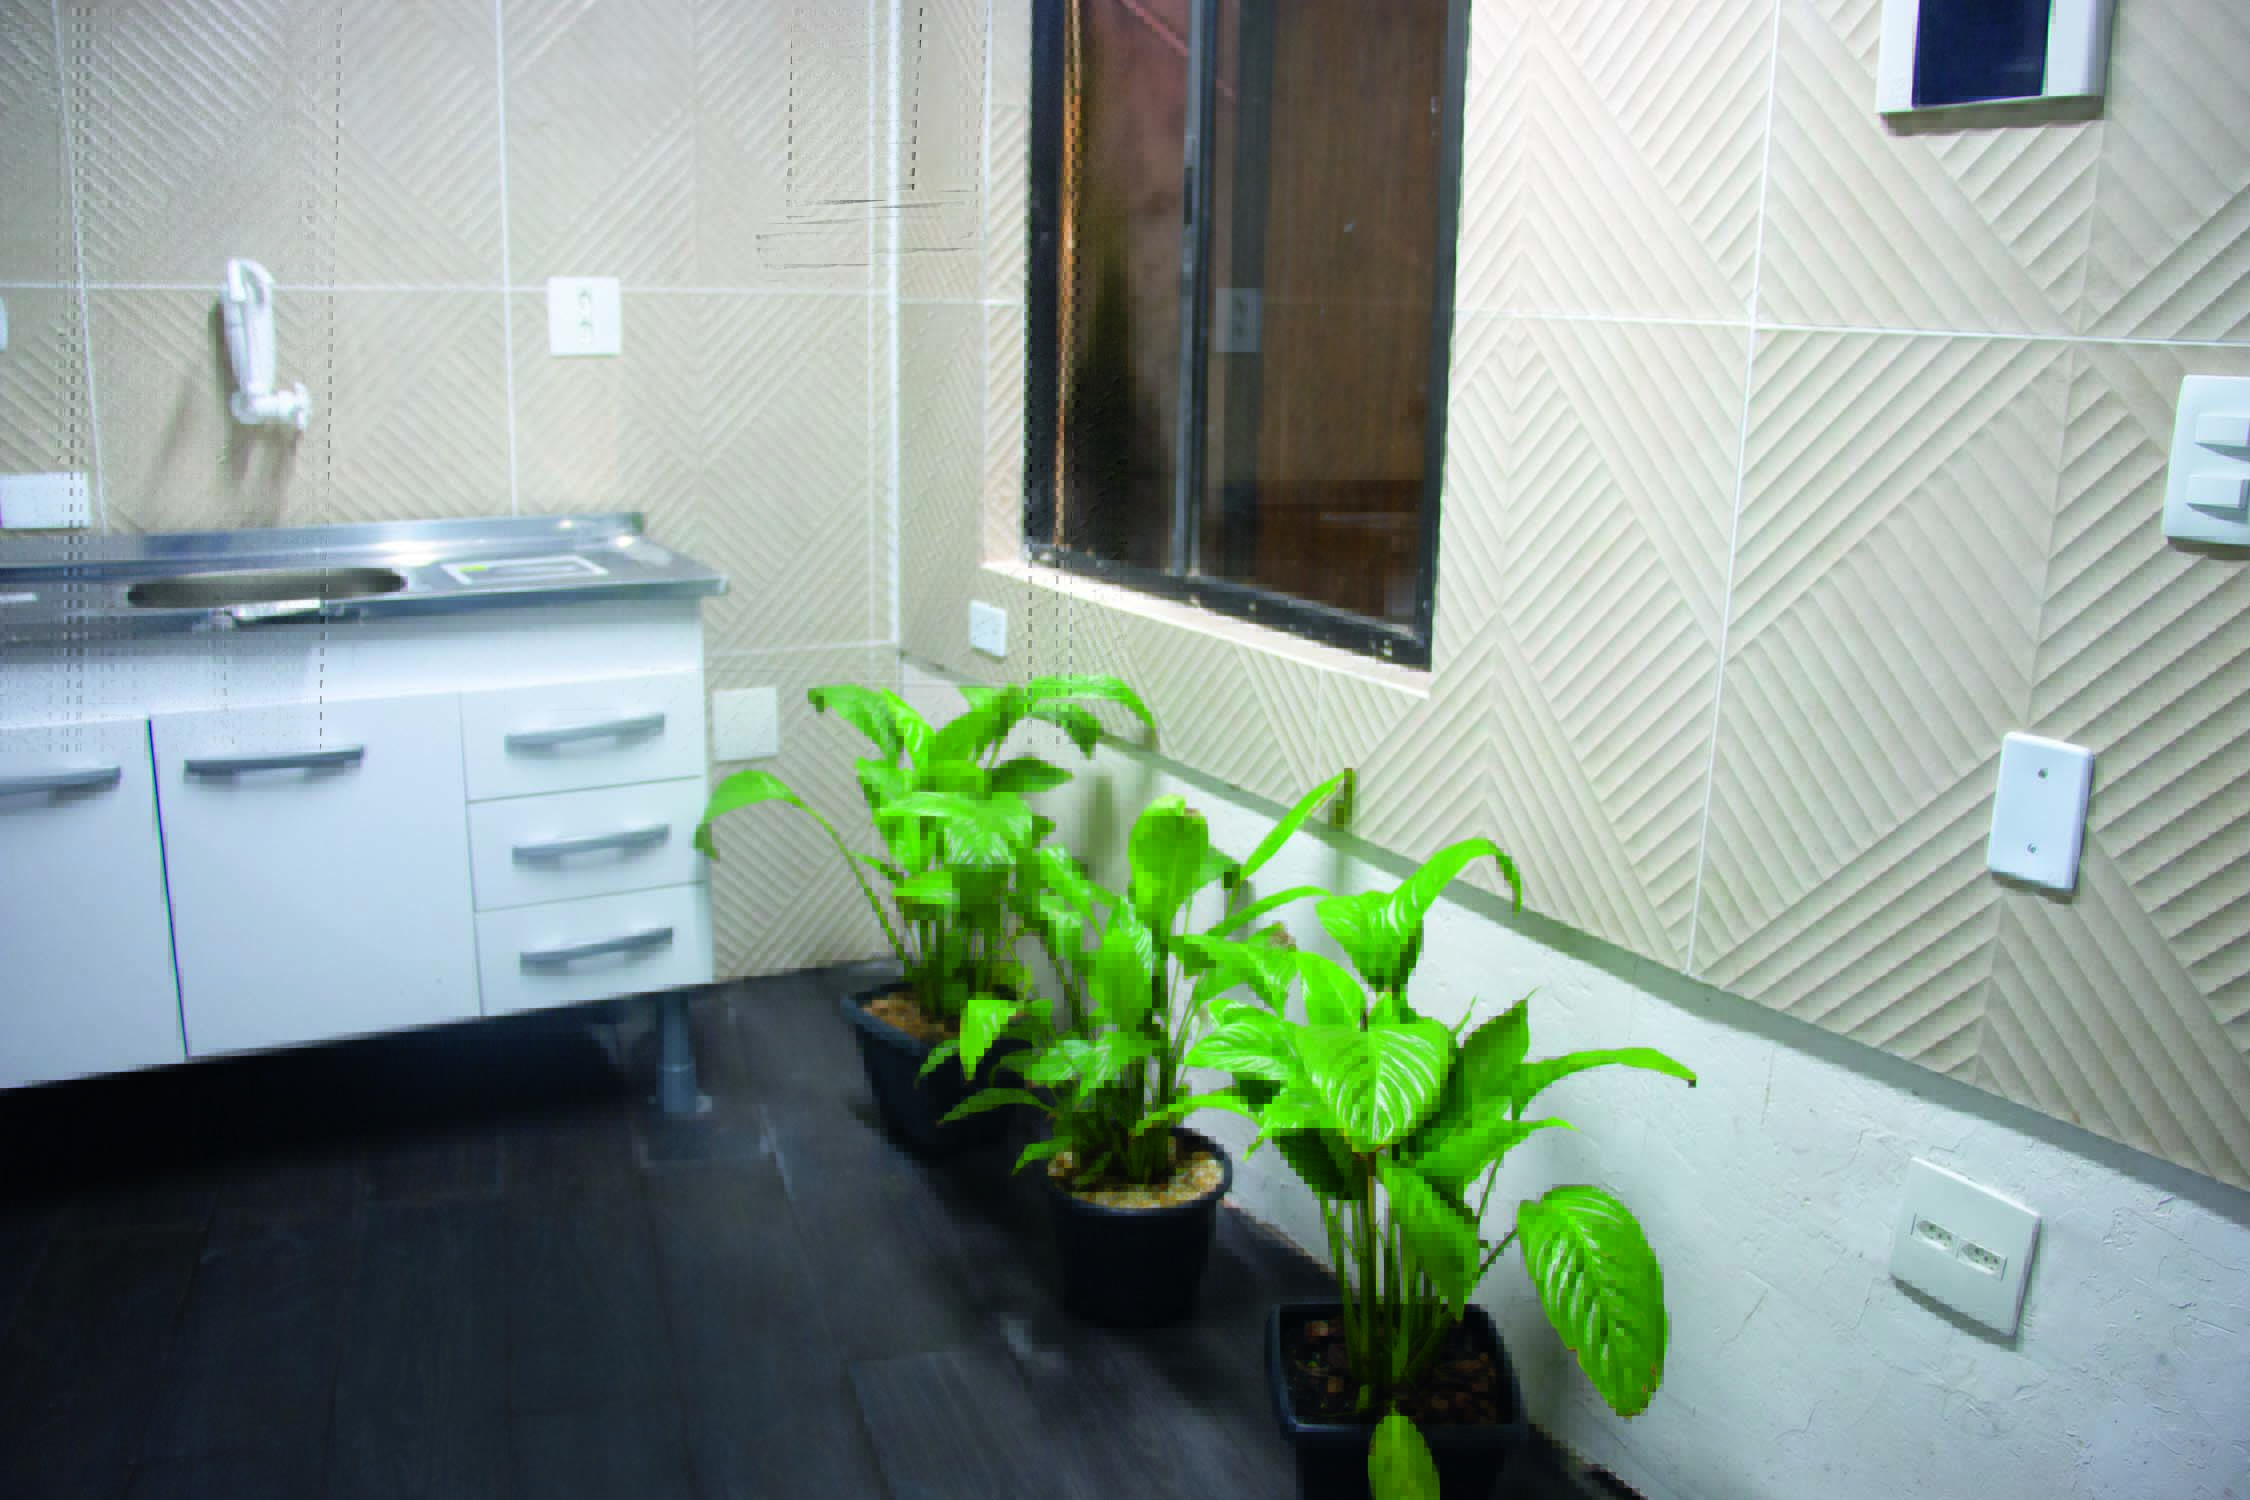 Imagem mostra diversos vasos de plantas no chão de cozinha com paredes com azulejos beges.